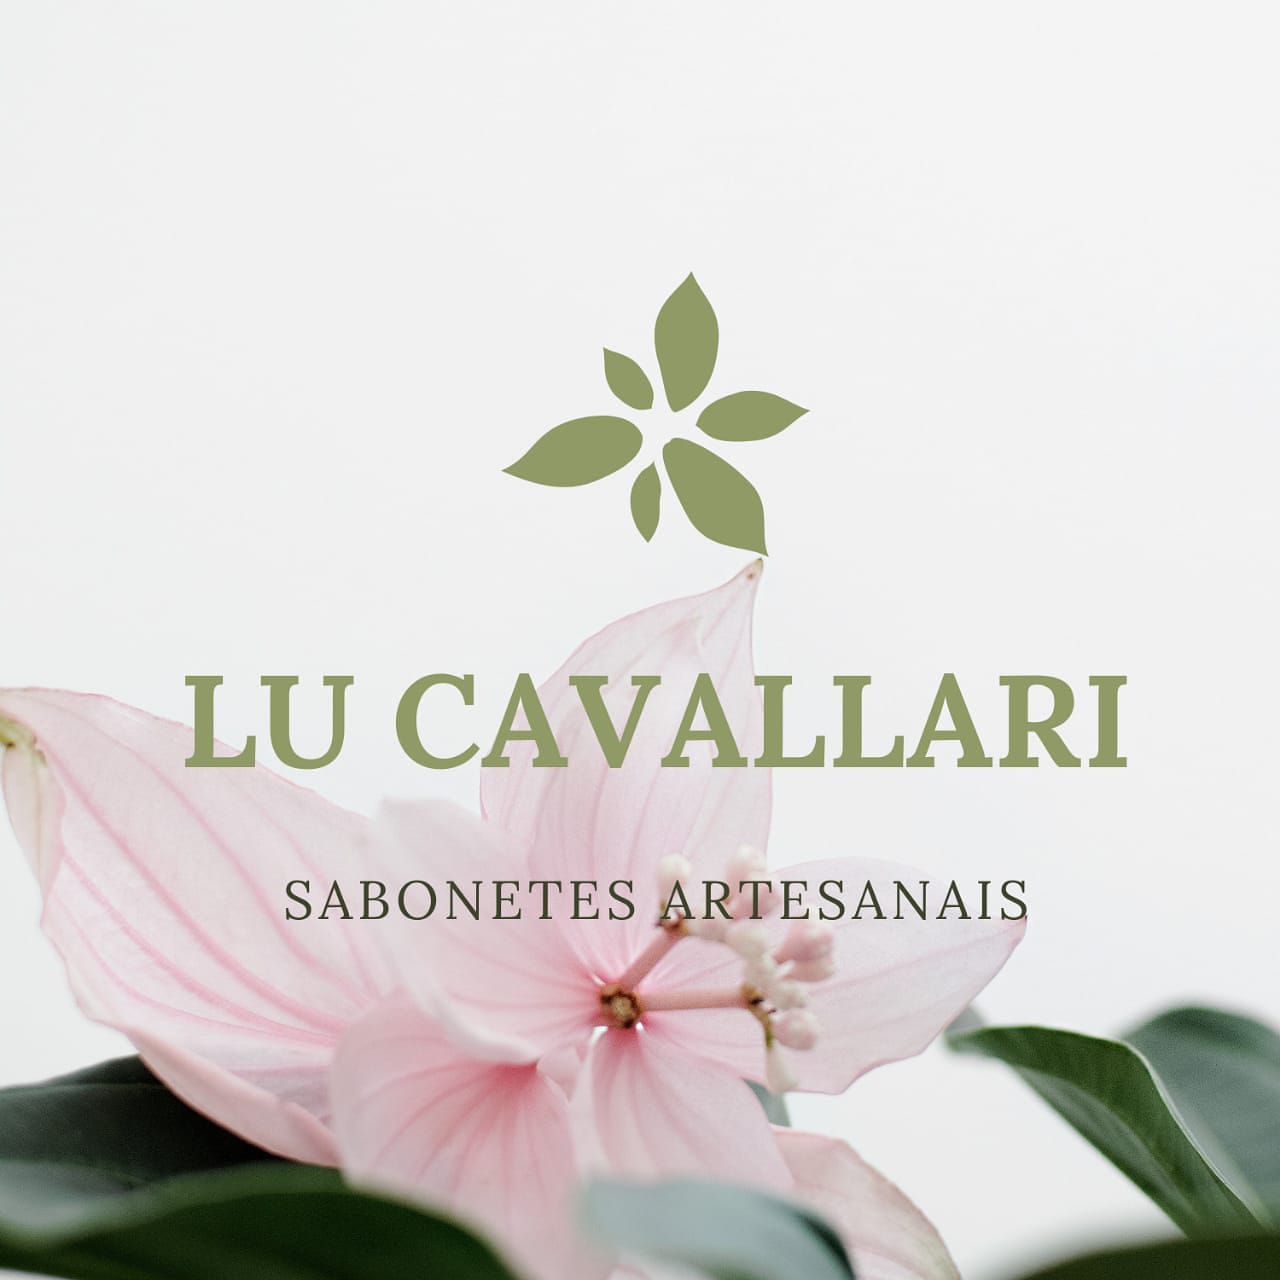 Lu Cavallari